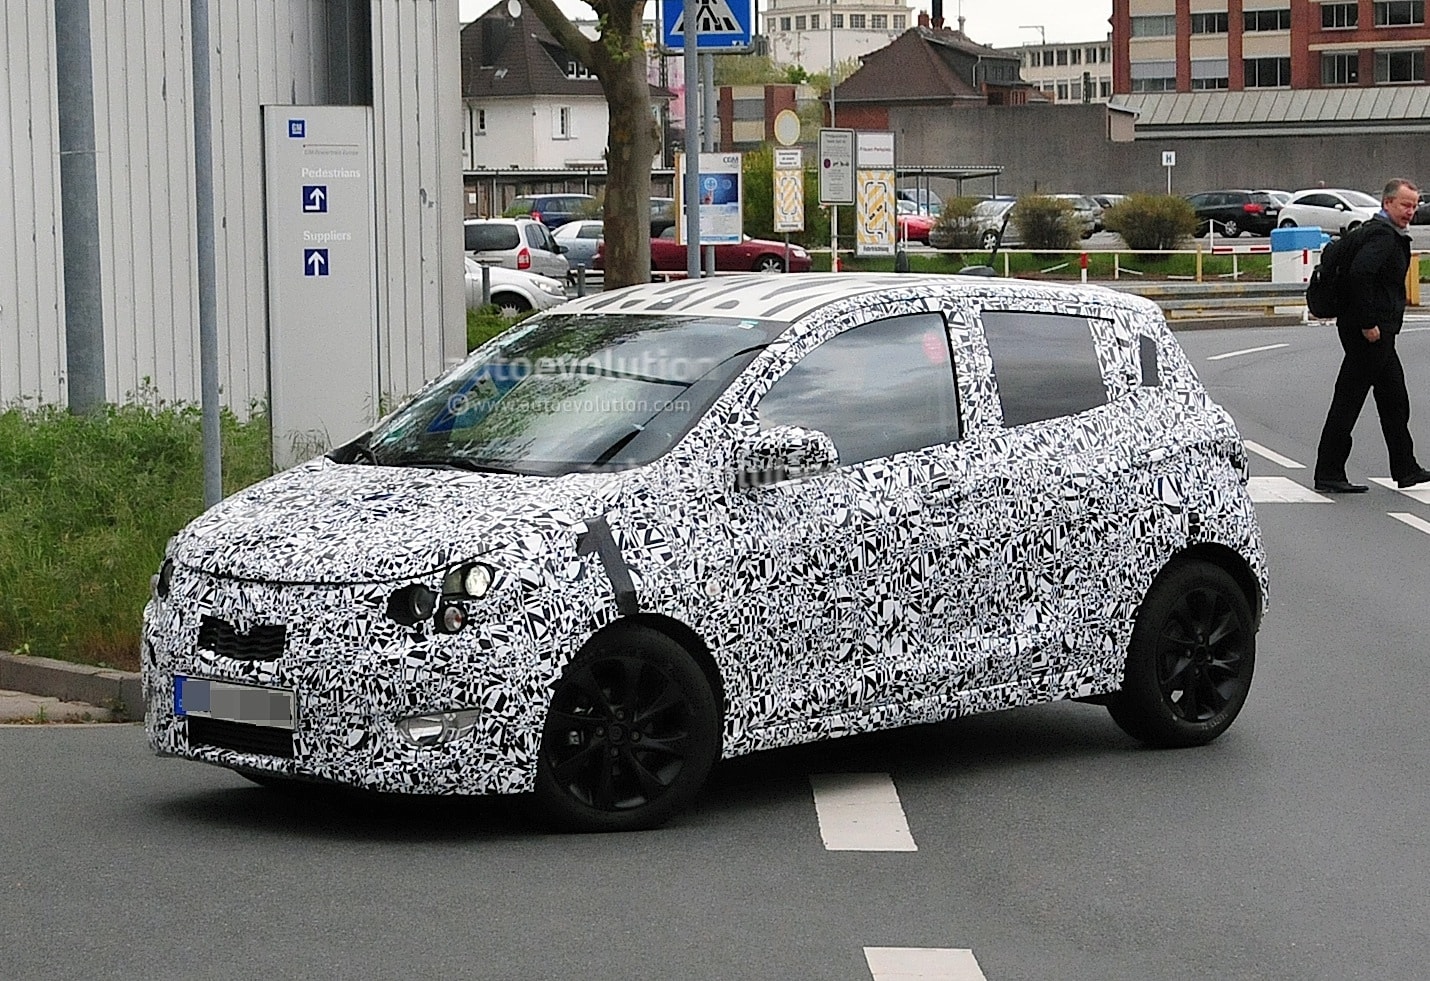 Opel wants to develop its own Agila